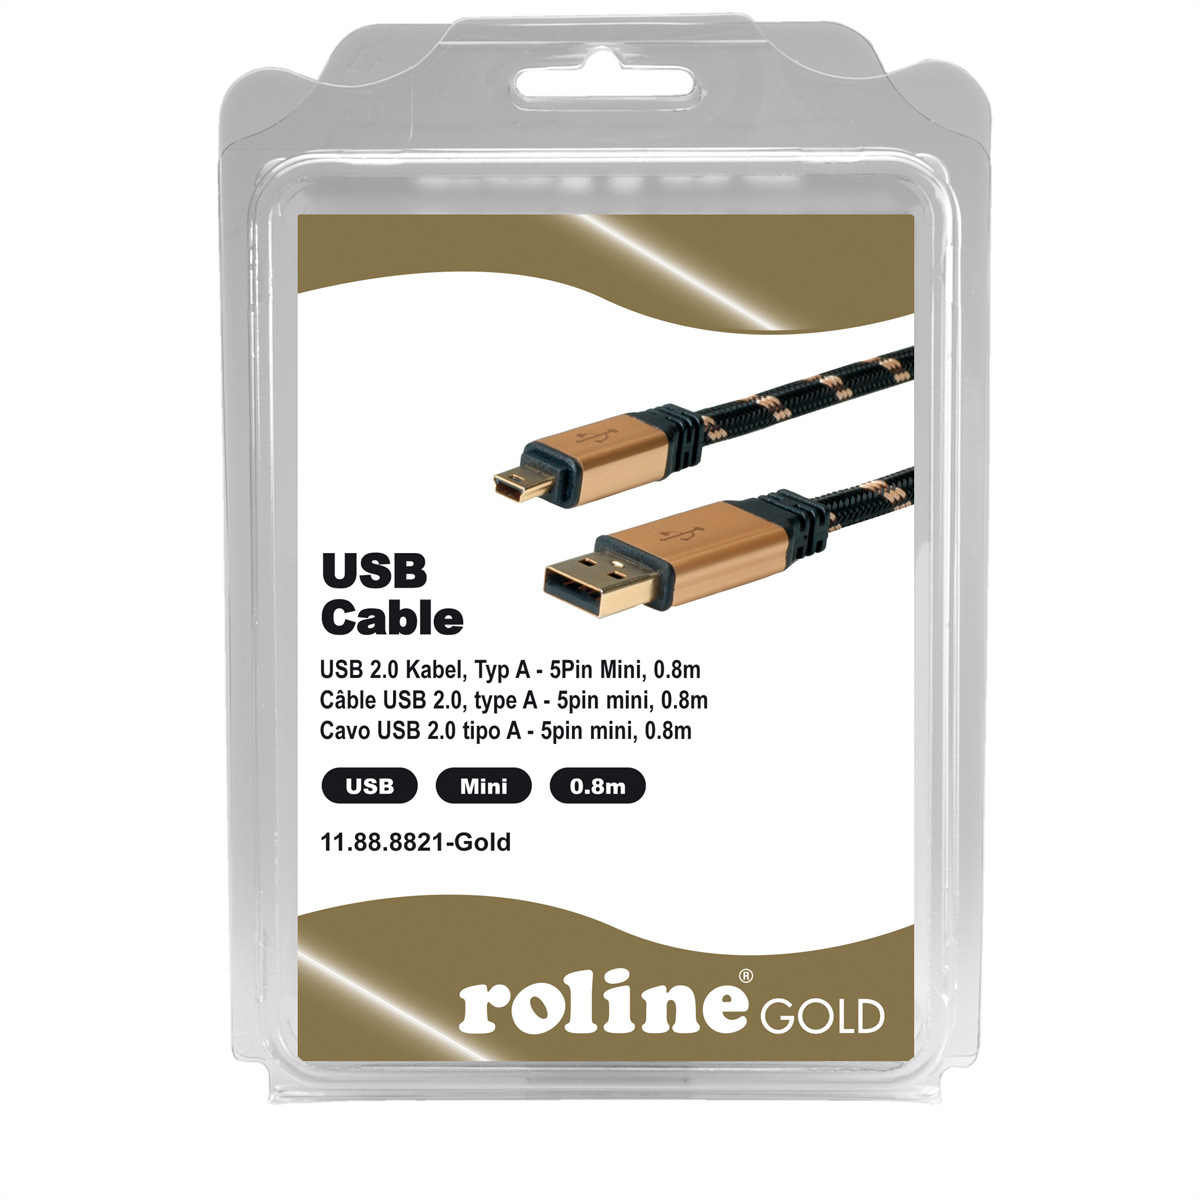 ROLINE GOLD USB 2.0 Typ A Kabel, - 2.0 USB Mini Mini 5-Pin Kabel